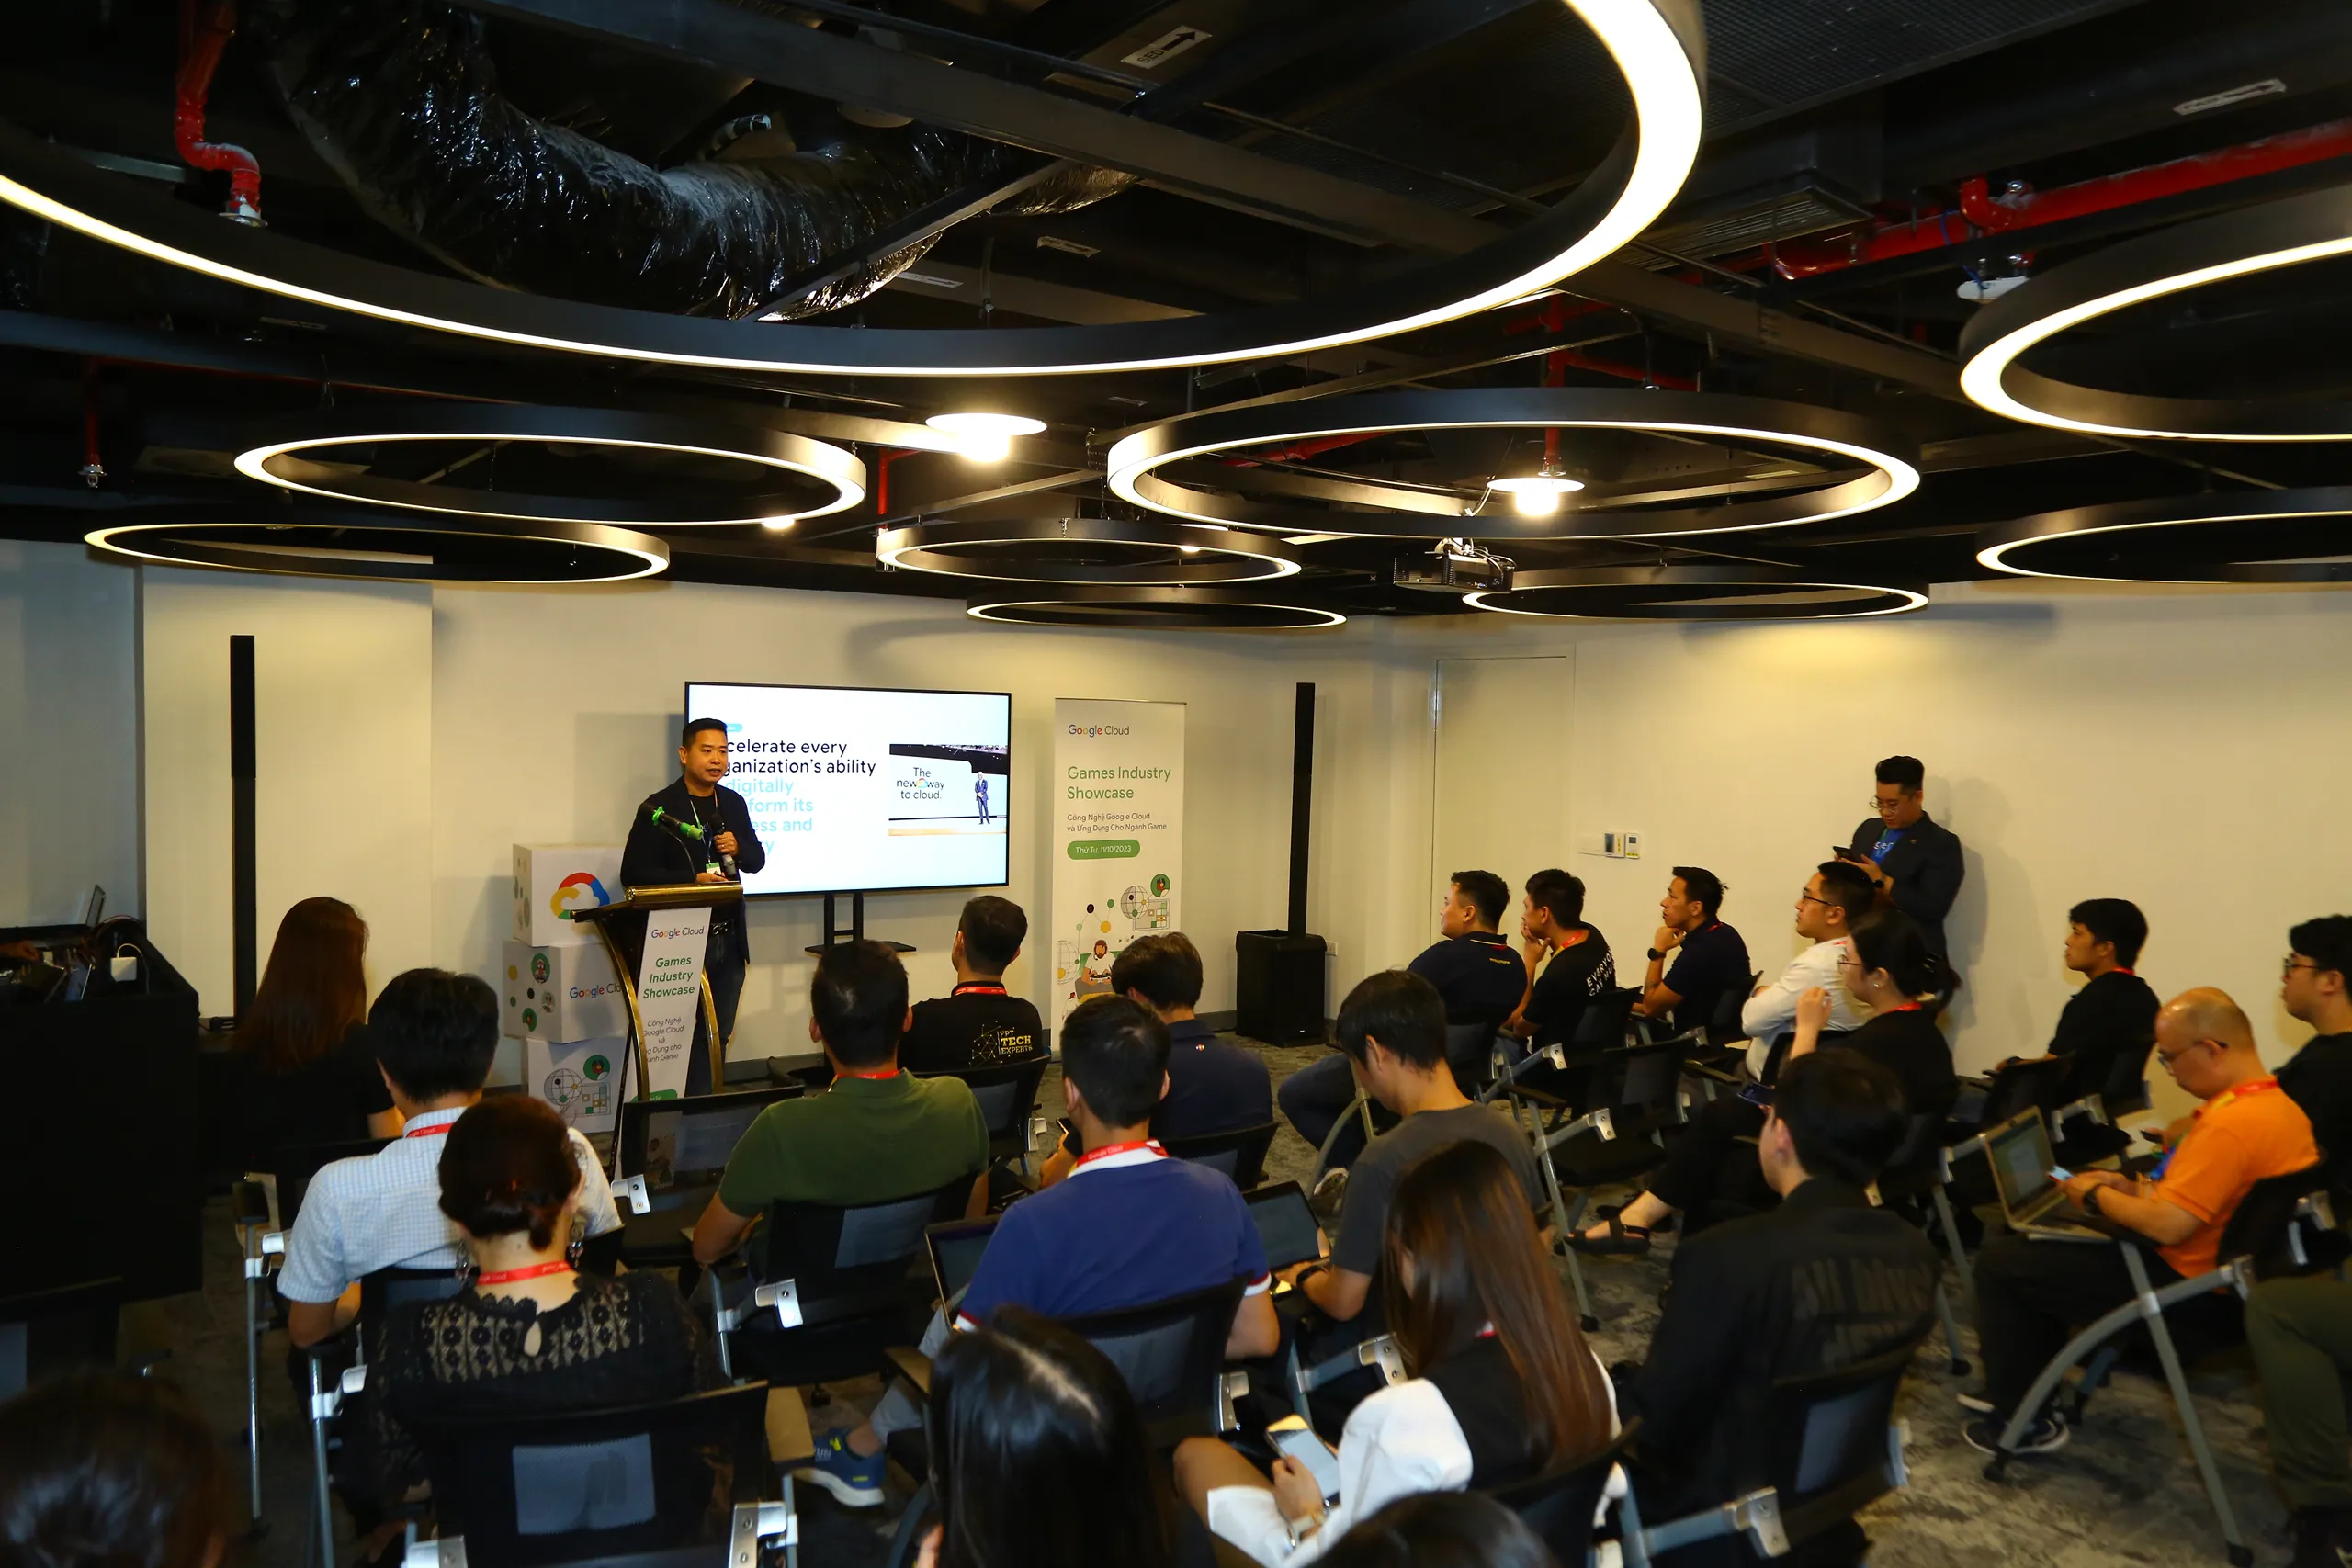 Google Cloud và các doanh nghiệp game Việt Nam hợp tác thúc đẩy ngành công nghiệp game Việt Nam phát triển